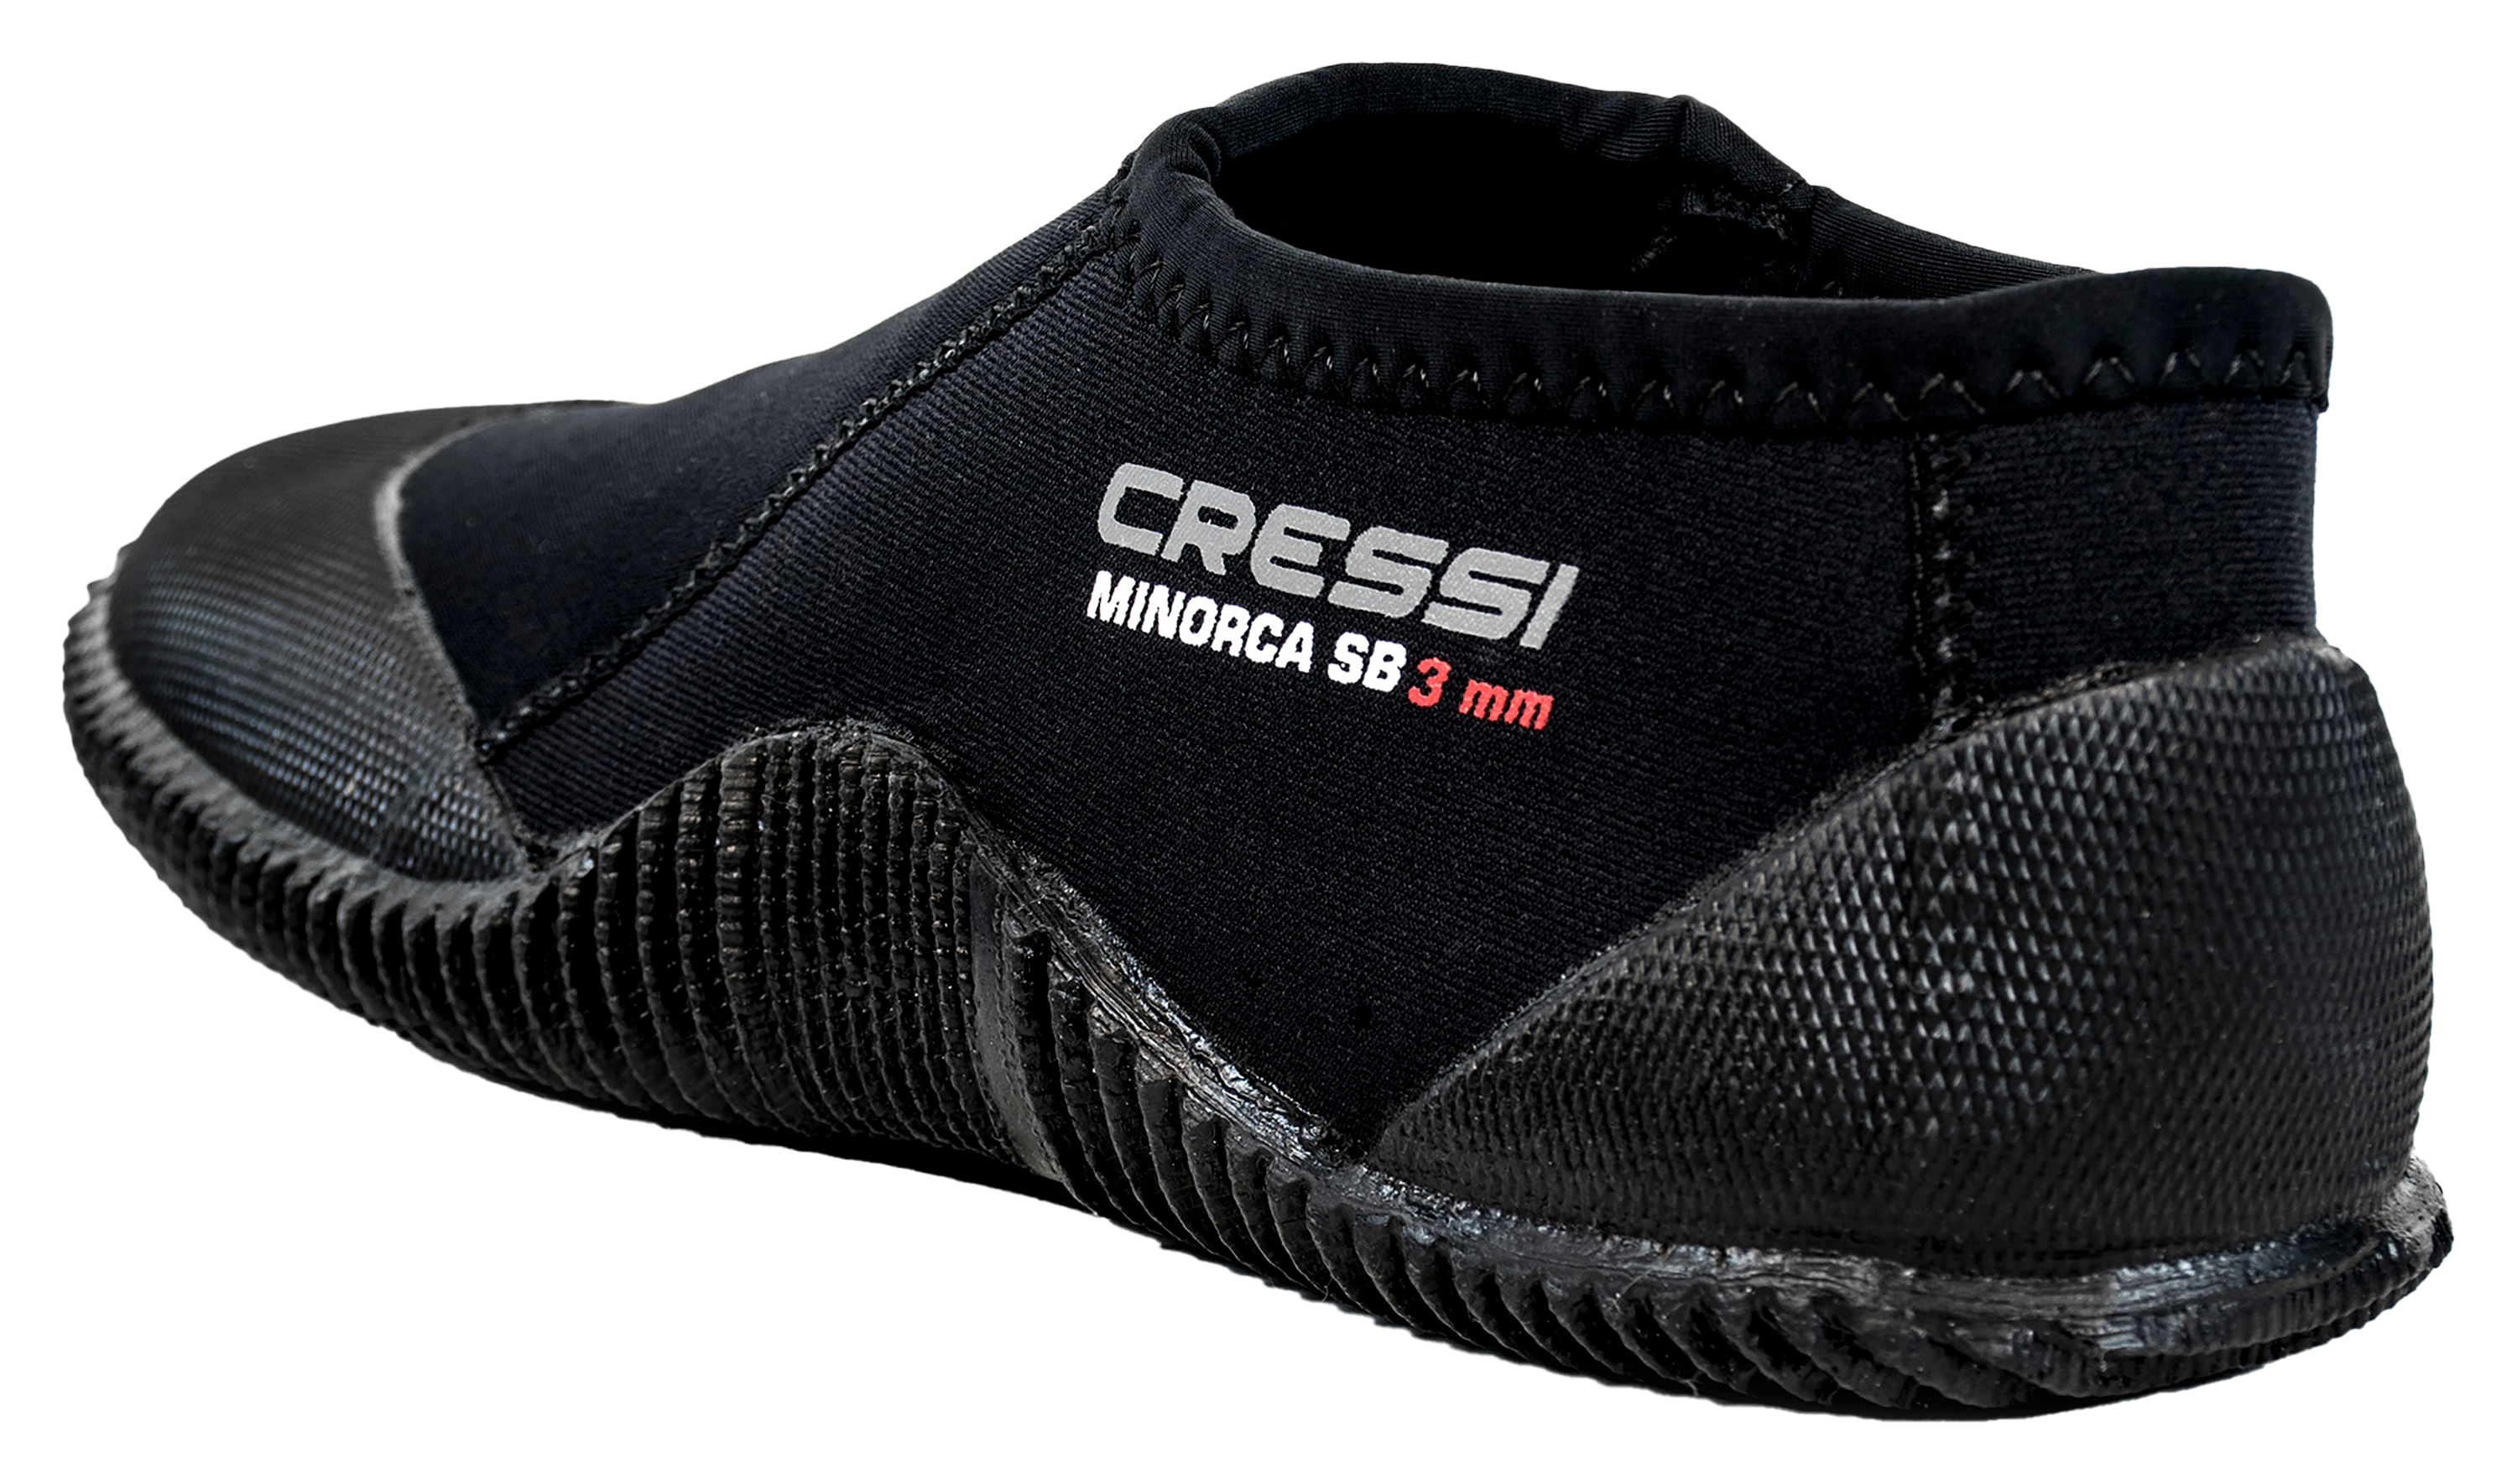 Cressi Minorca Short Boots for Men - Black - 7